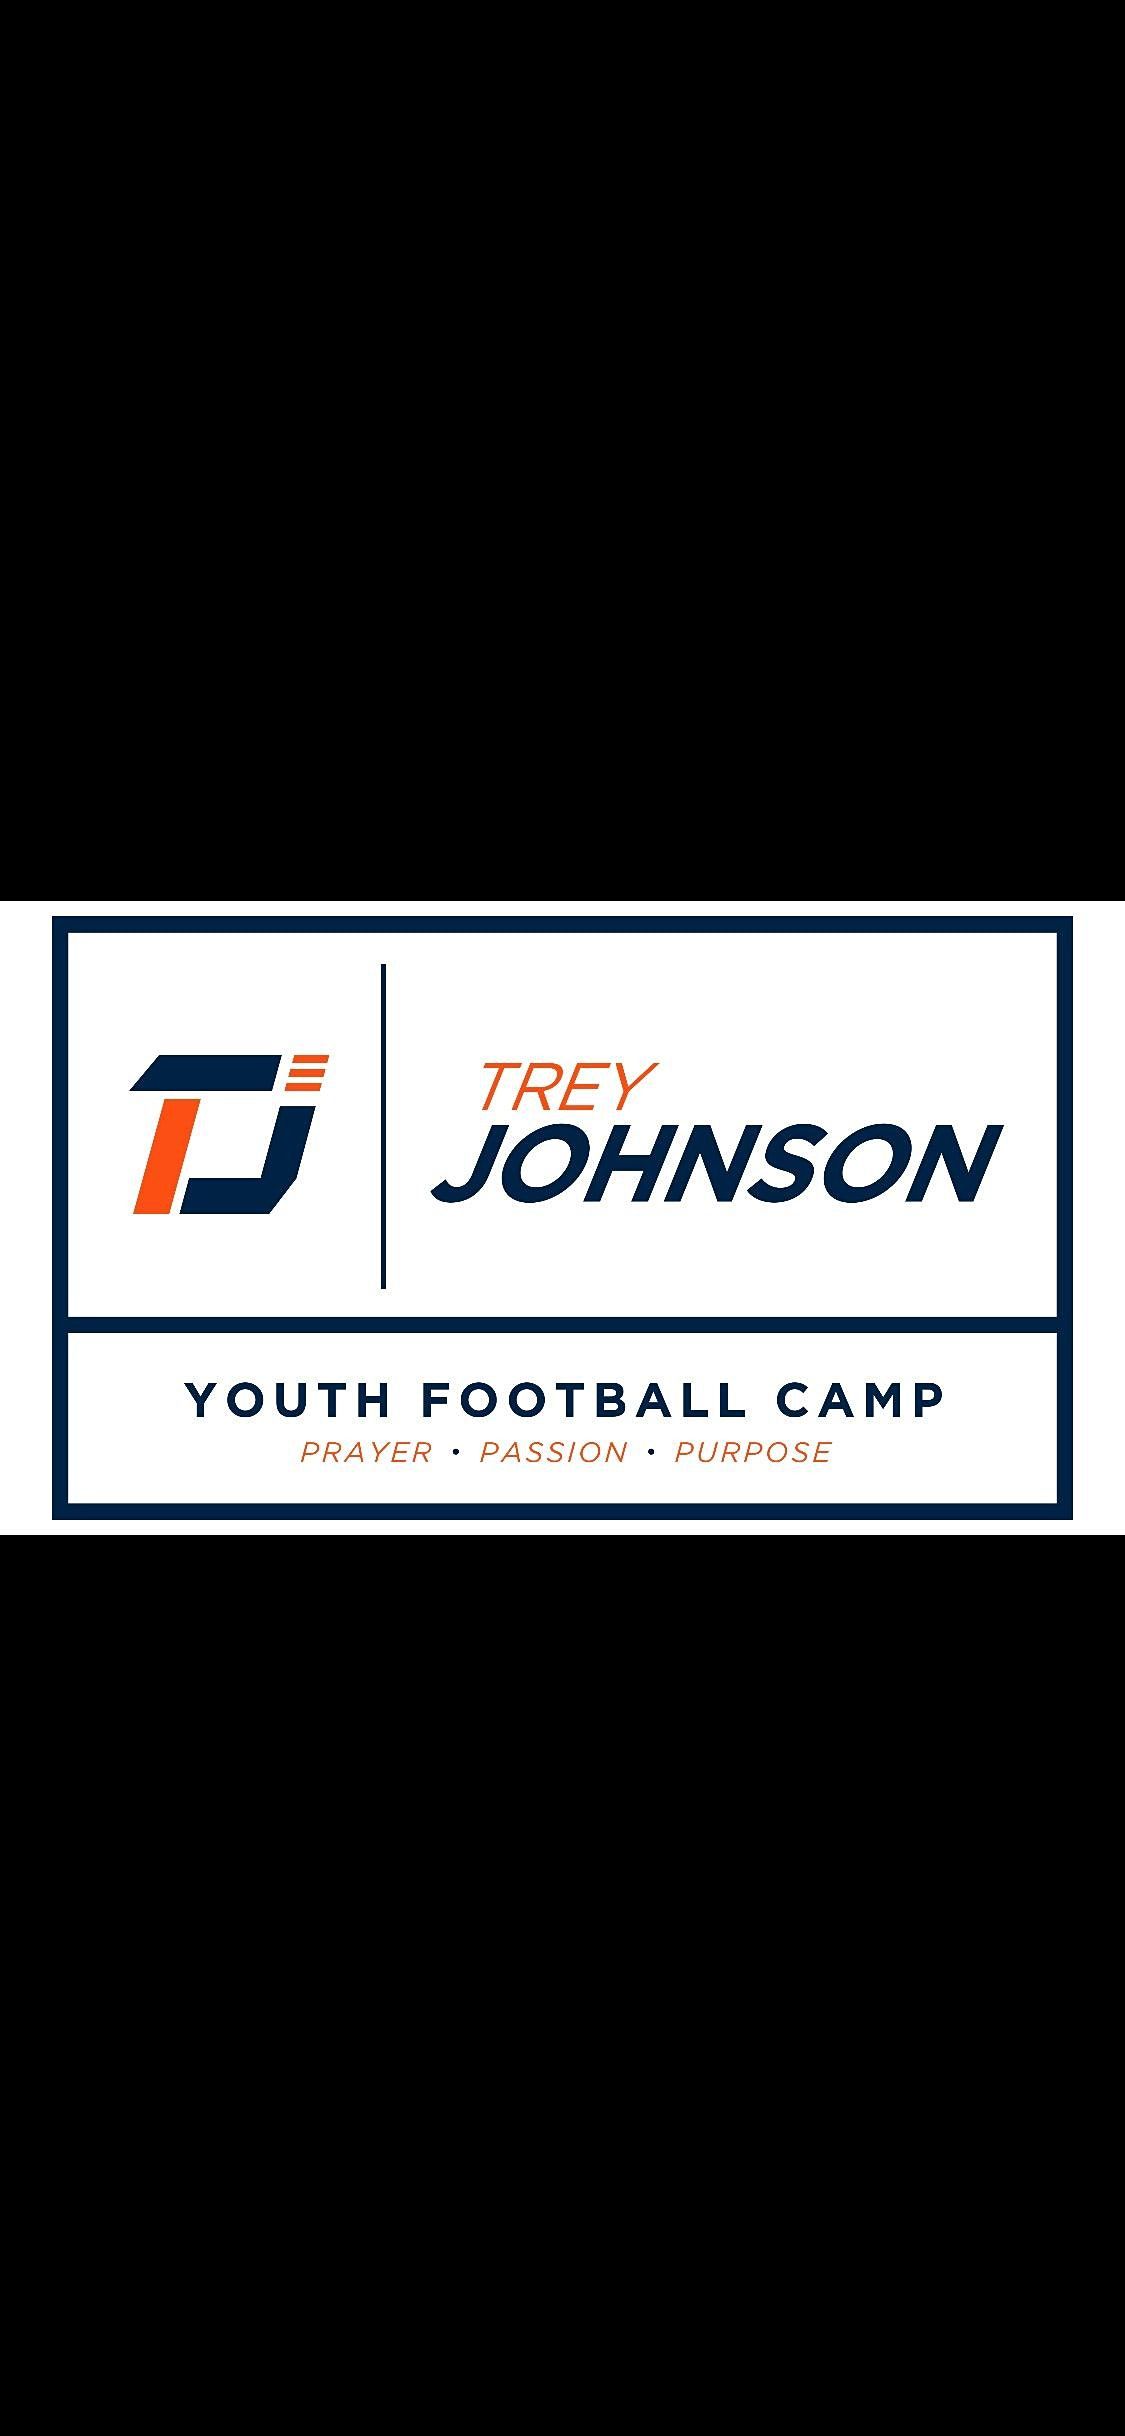 Trey Johnson Youth Football Camp